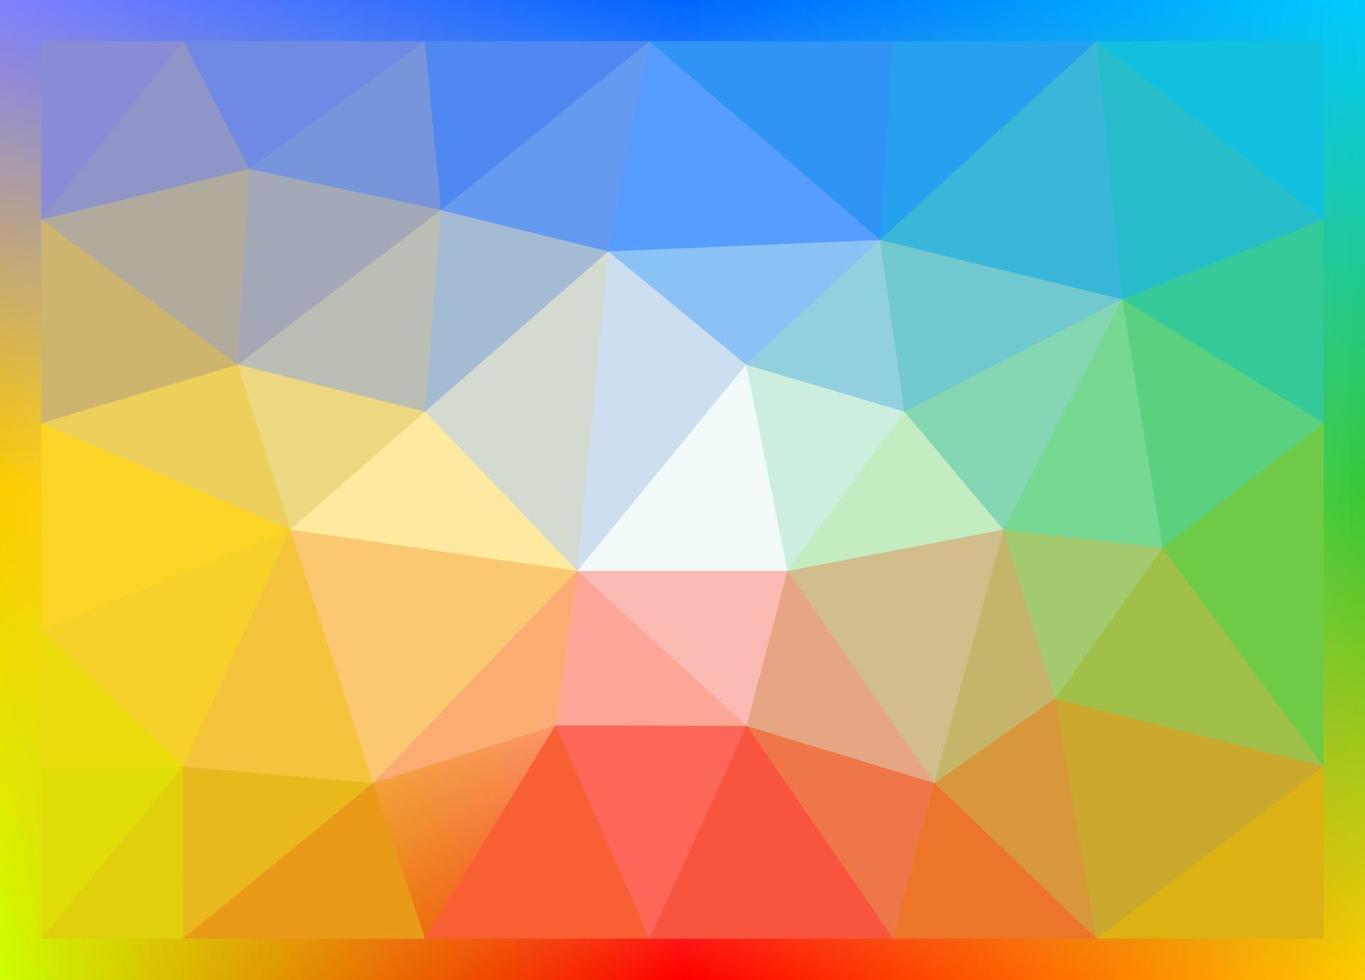 el fondo de malla dominante es el color del arco iris. fondo de malla con triángulos de colores. vector